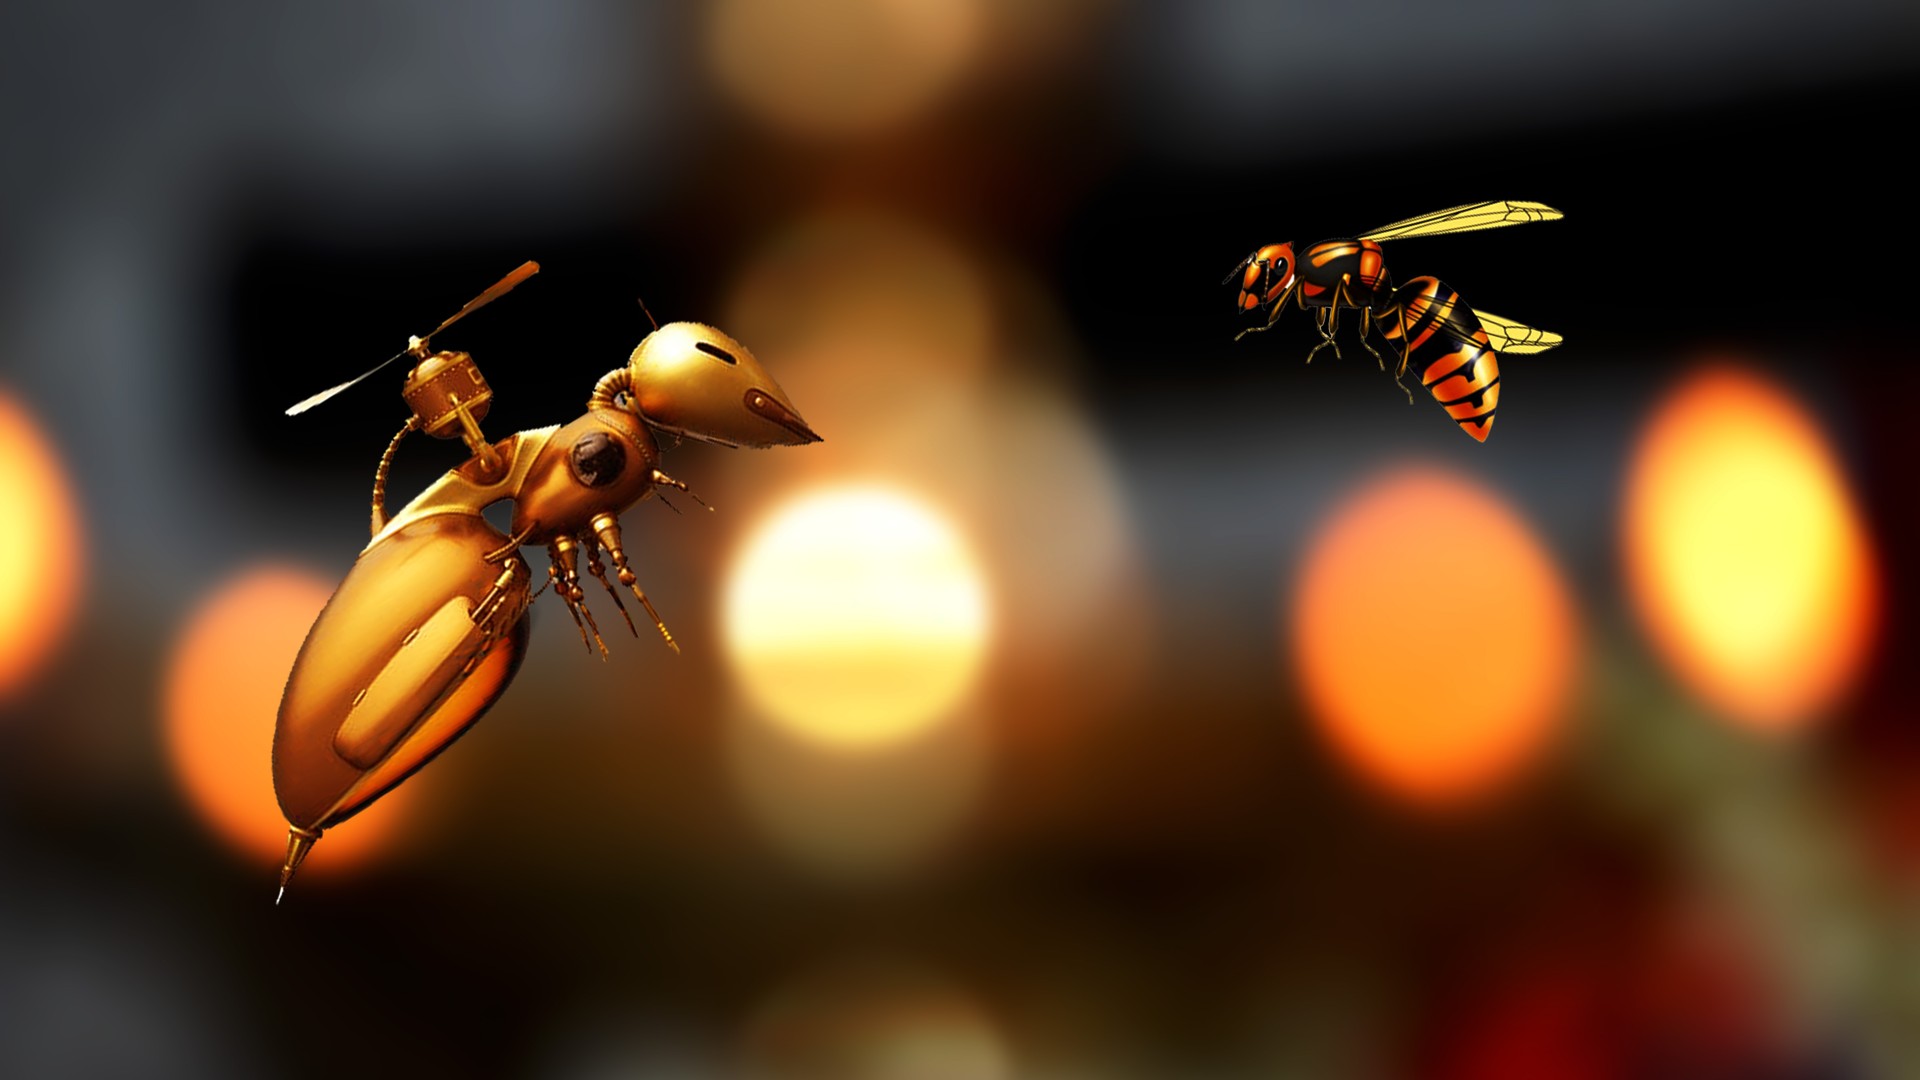 Robotic wasp and a Natural wasp meeting.